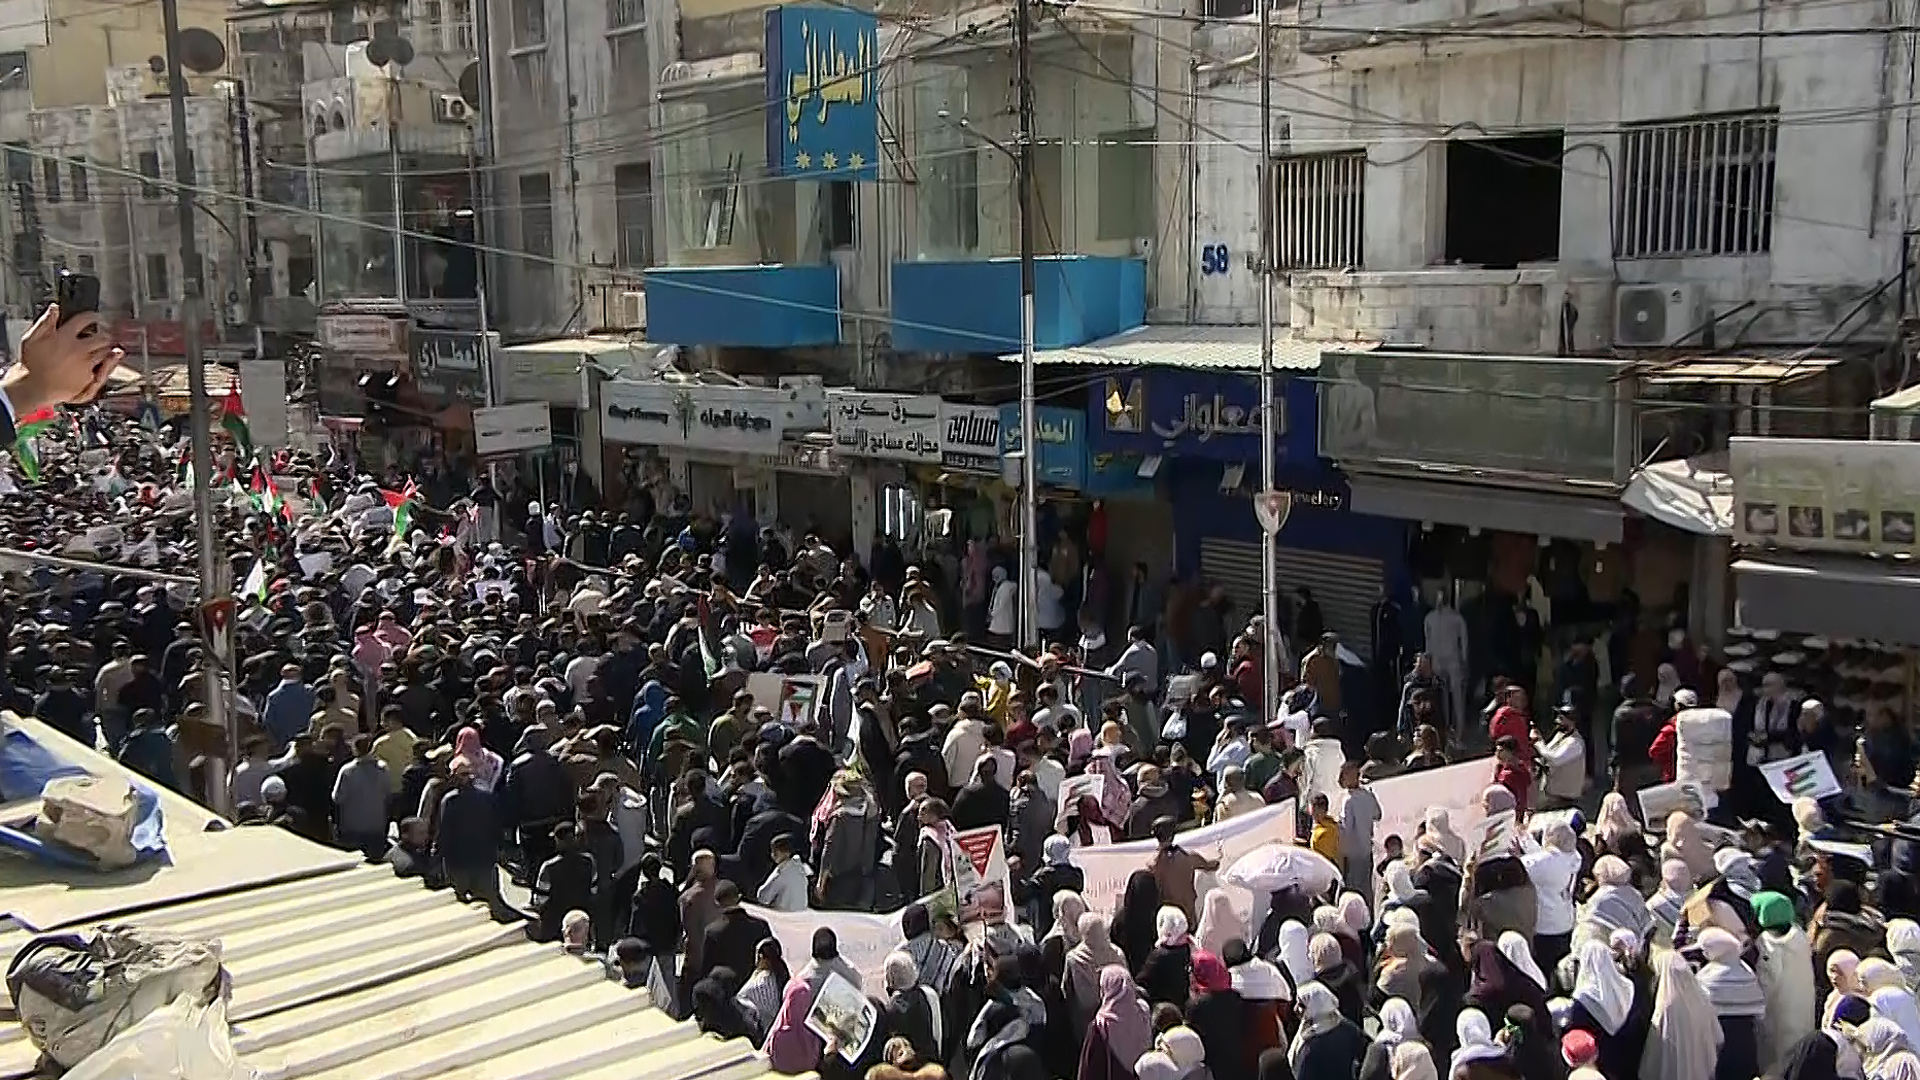 مظاهرات حاشدة بالأردن تندد بالحرب على غزة وتطالب بفتح المعابر | أخبار البرامج – البوكس نيوز